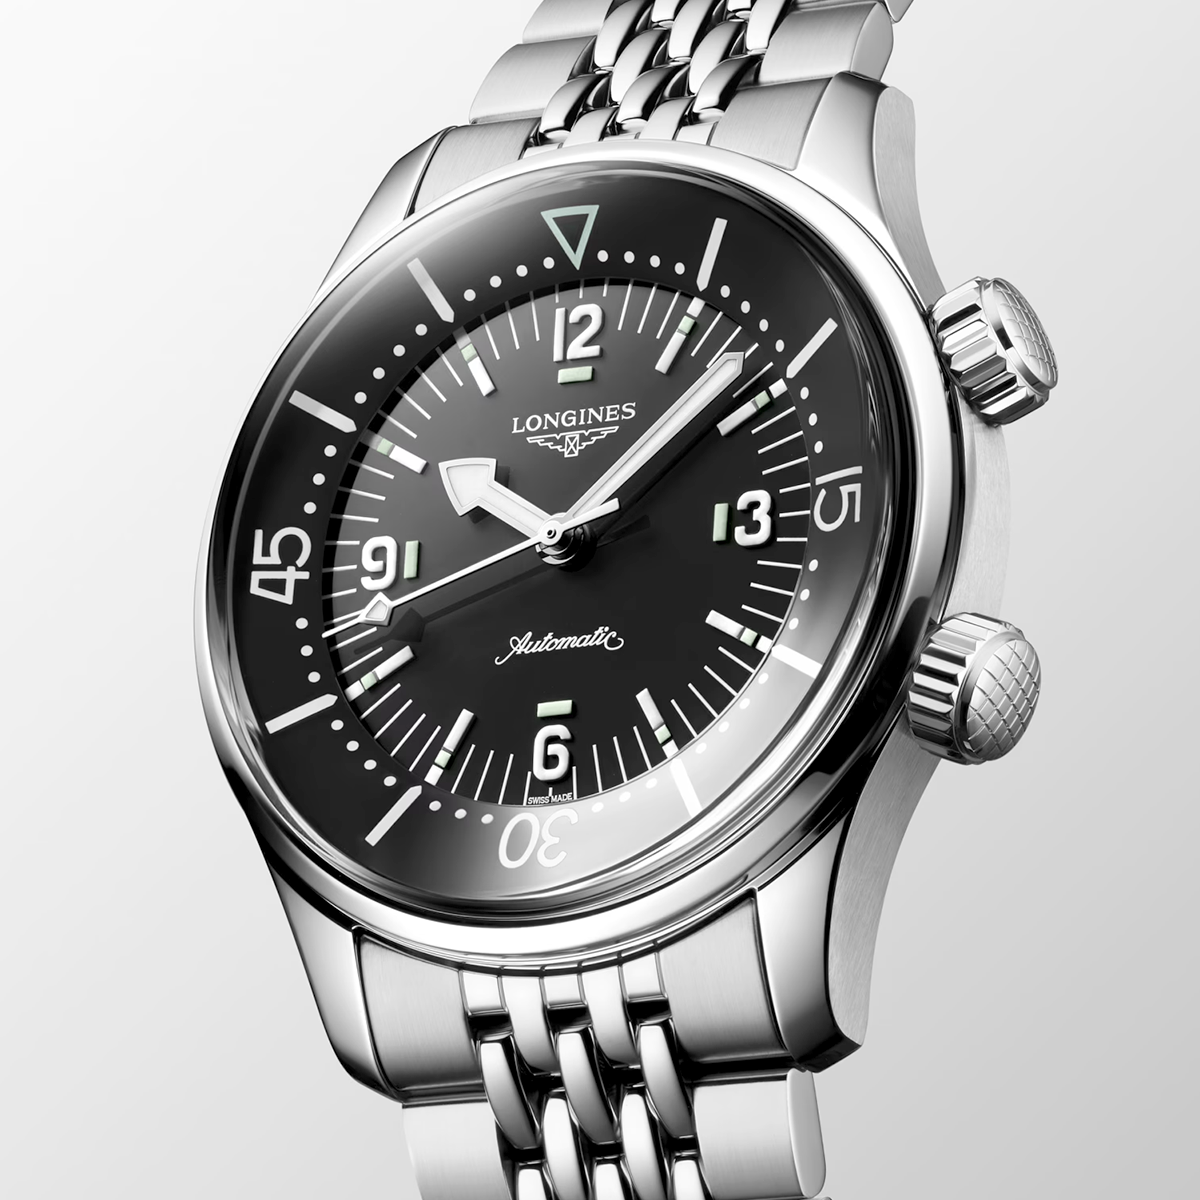 Legend Diver 39mm Black Dial Men's Automatic Bracelet Watch